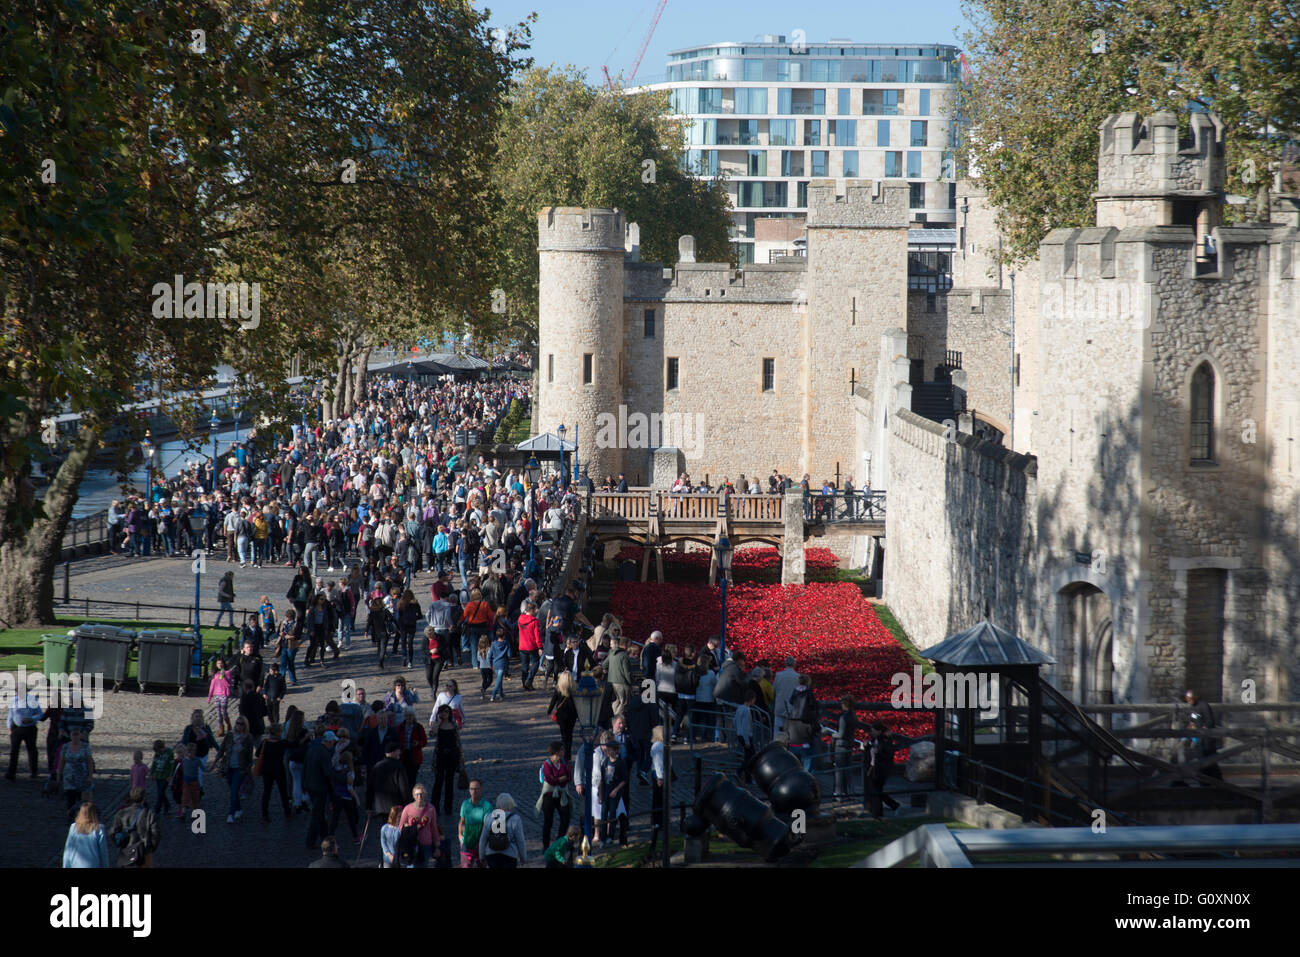 Les foules qui fréquentent les coquelicots affichage à la Tour de Londres, London, EC2, Angleterre Banque D'Images